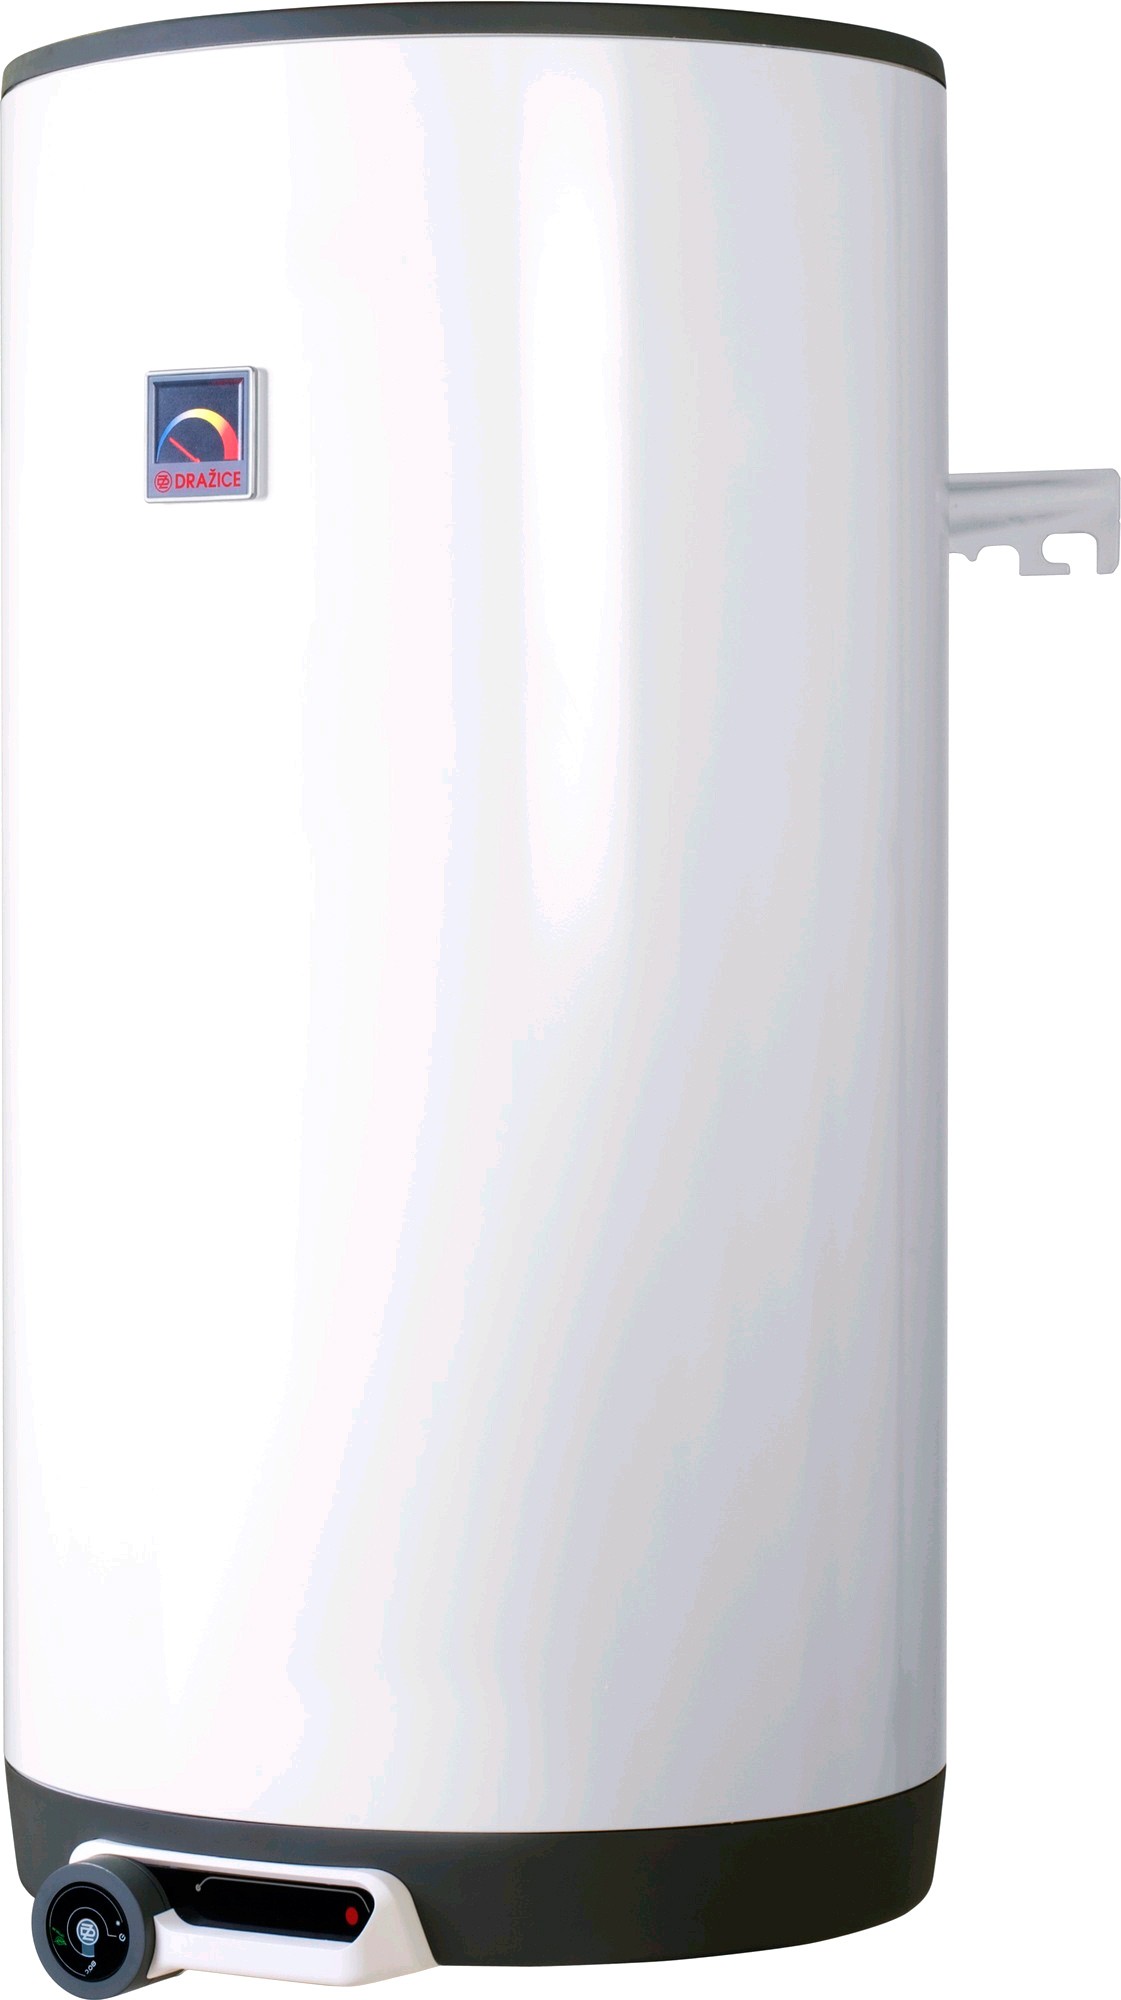 Отзывы комбинированный водонагреватель Drazice OKC 160 в Украине